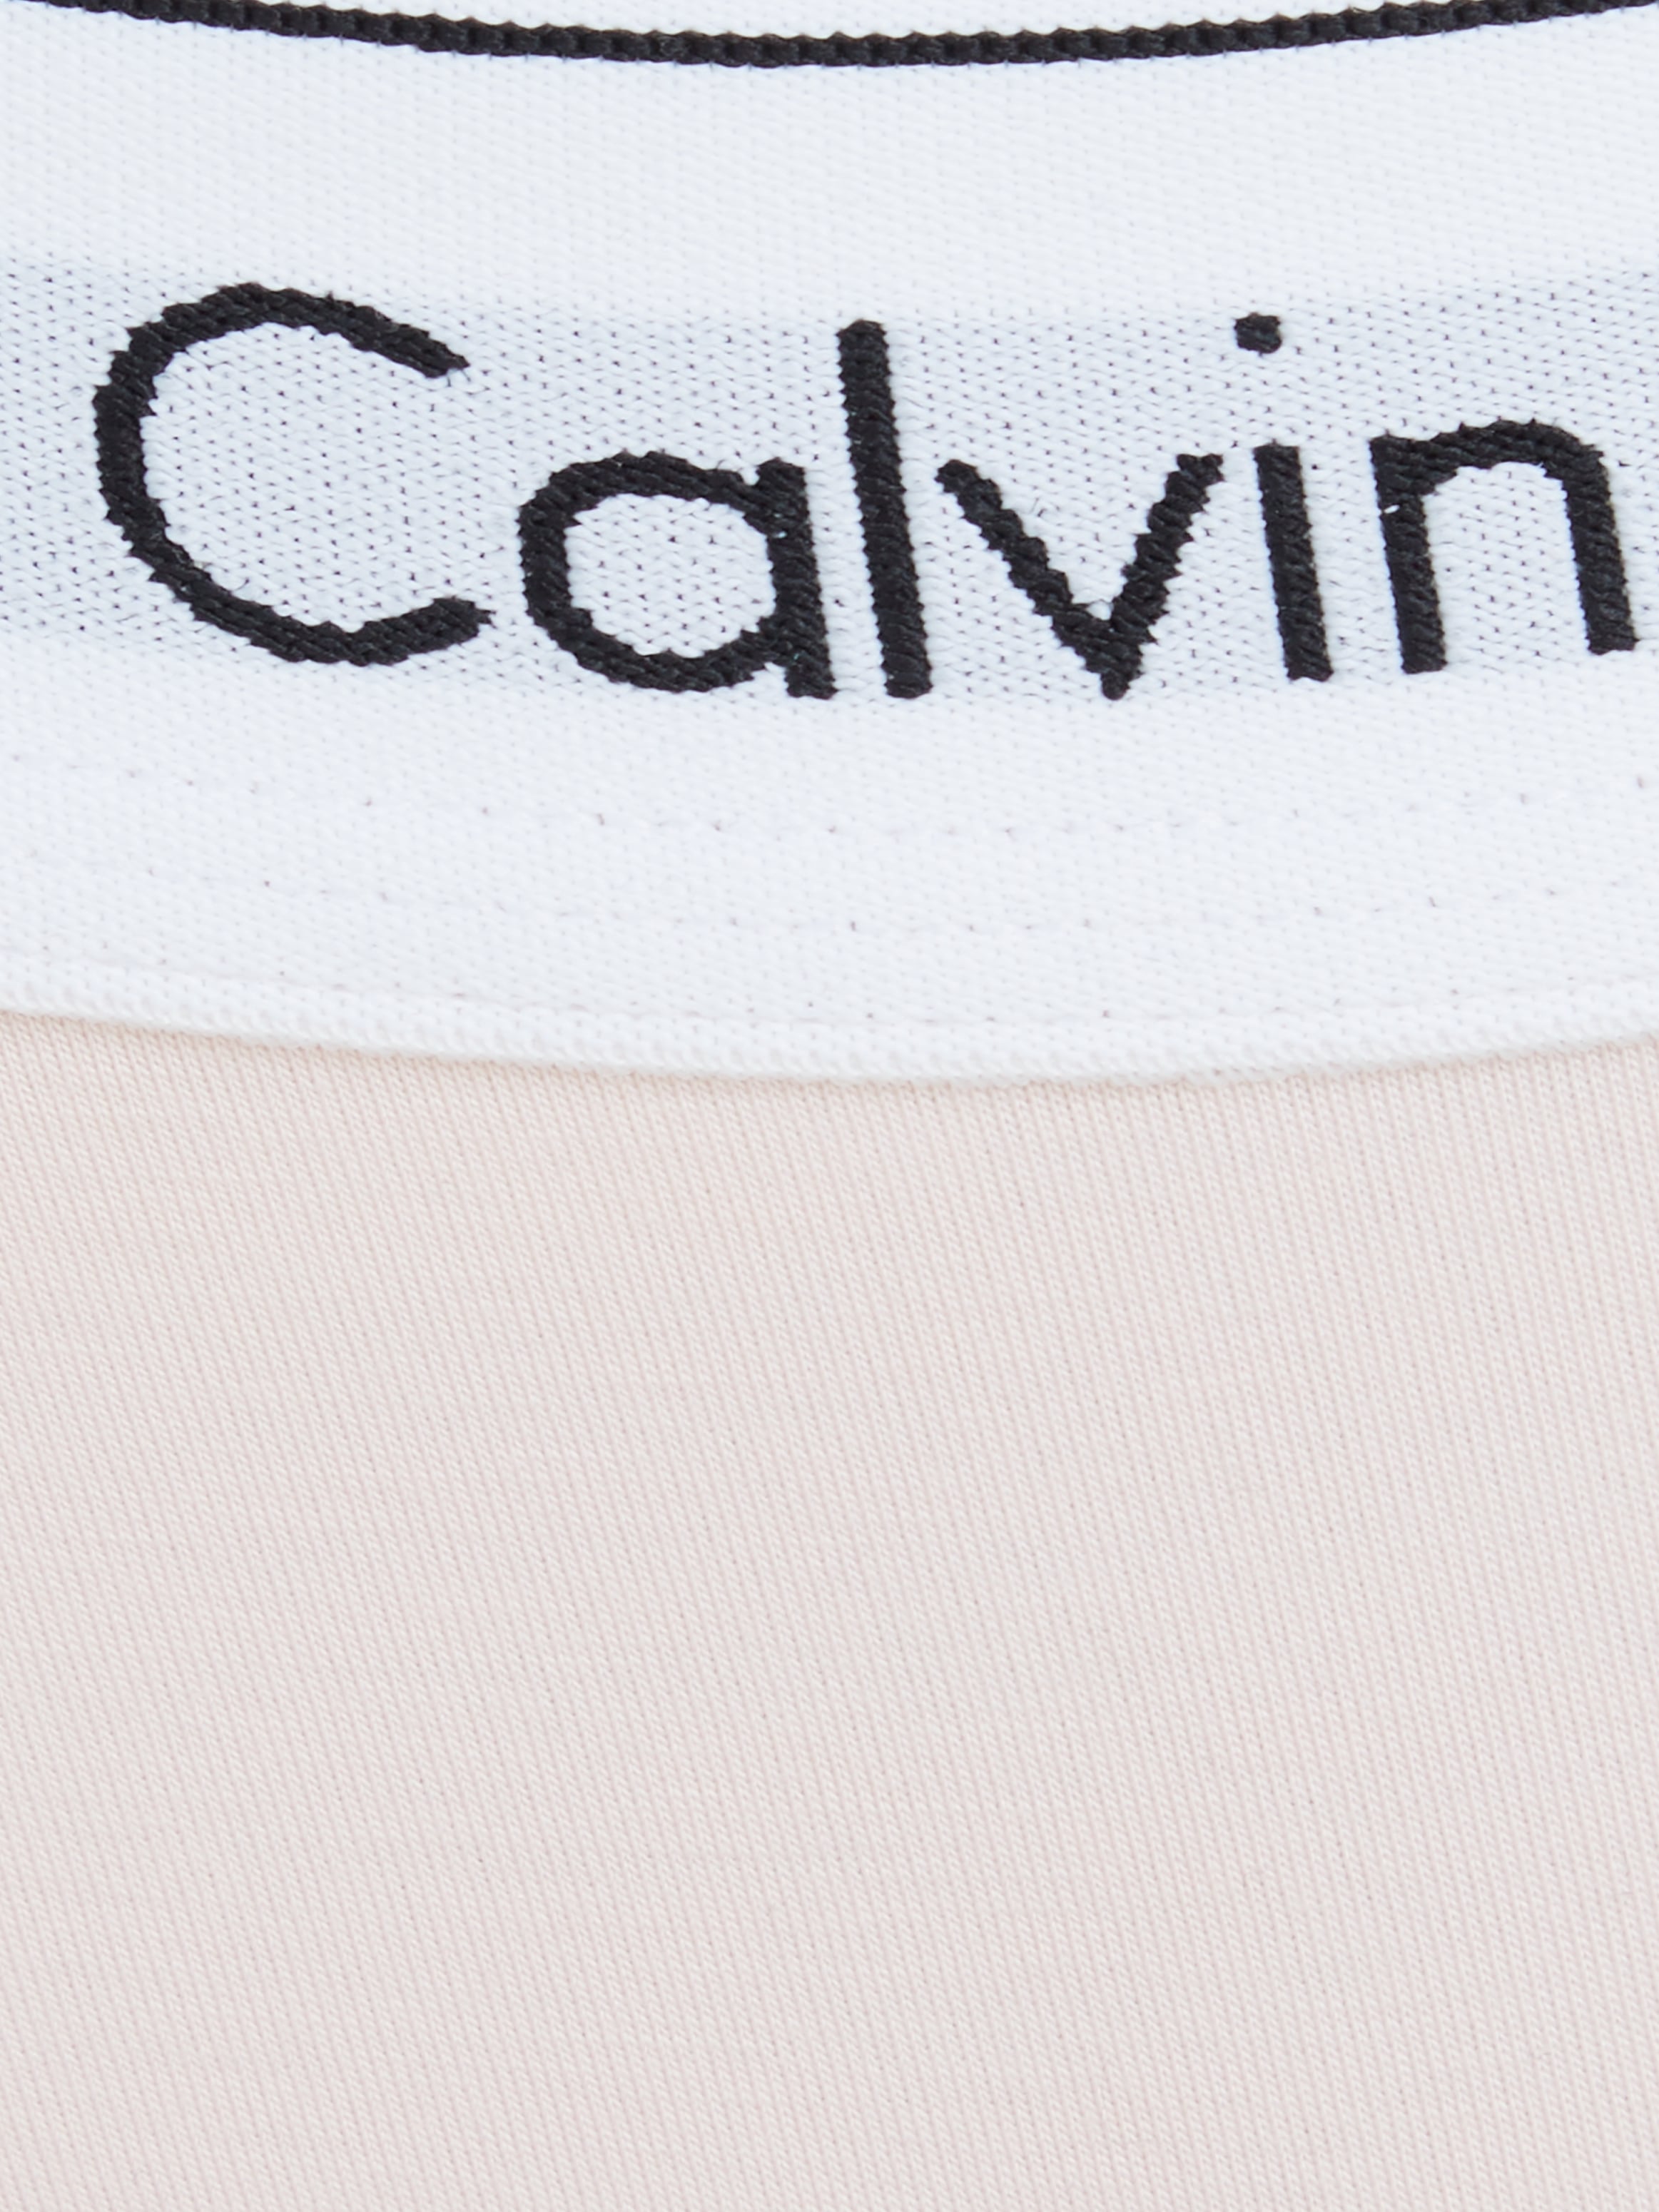 Calvin Klein Underwear T-String »MODERN COTTON«, mit breitem Bündchen